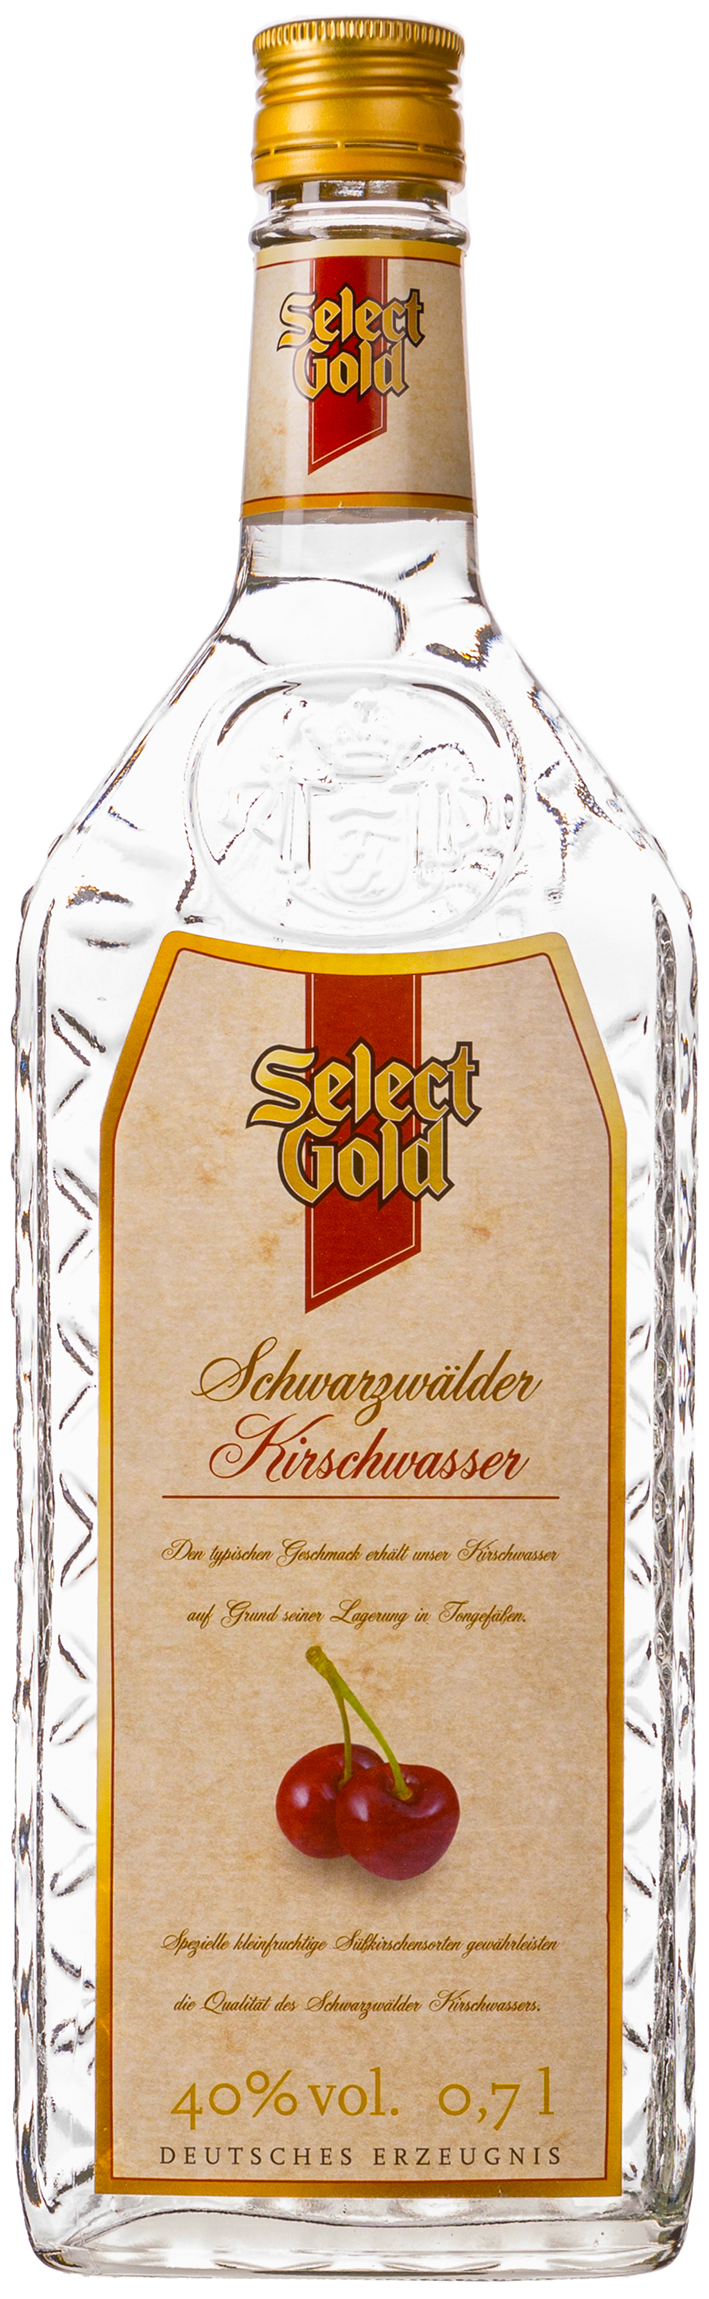 Select Gold Schwarzwälder Kirschwasser 40% 0,7L